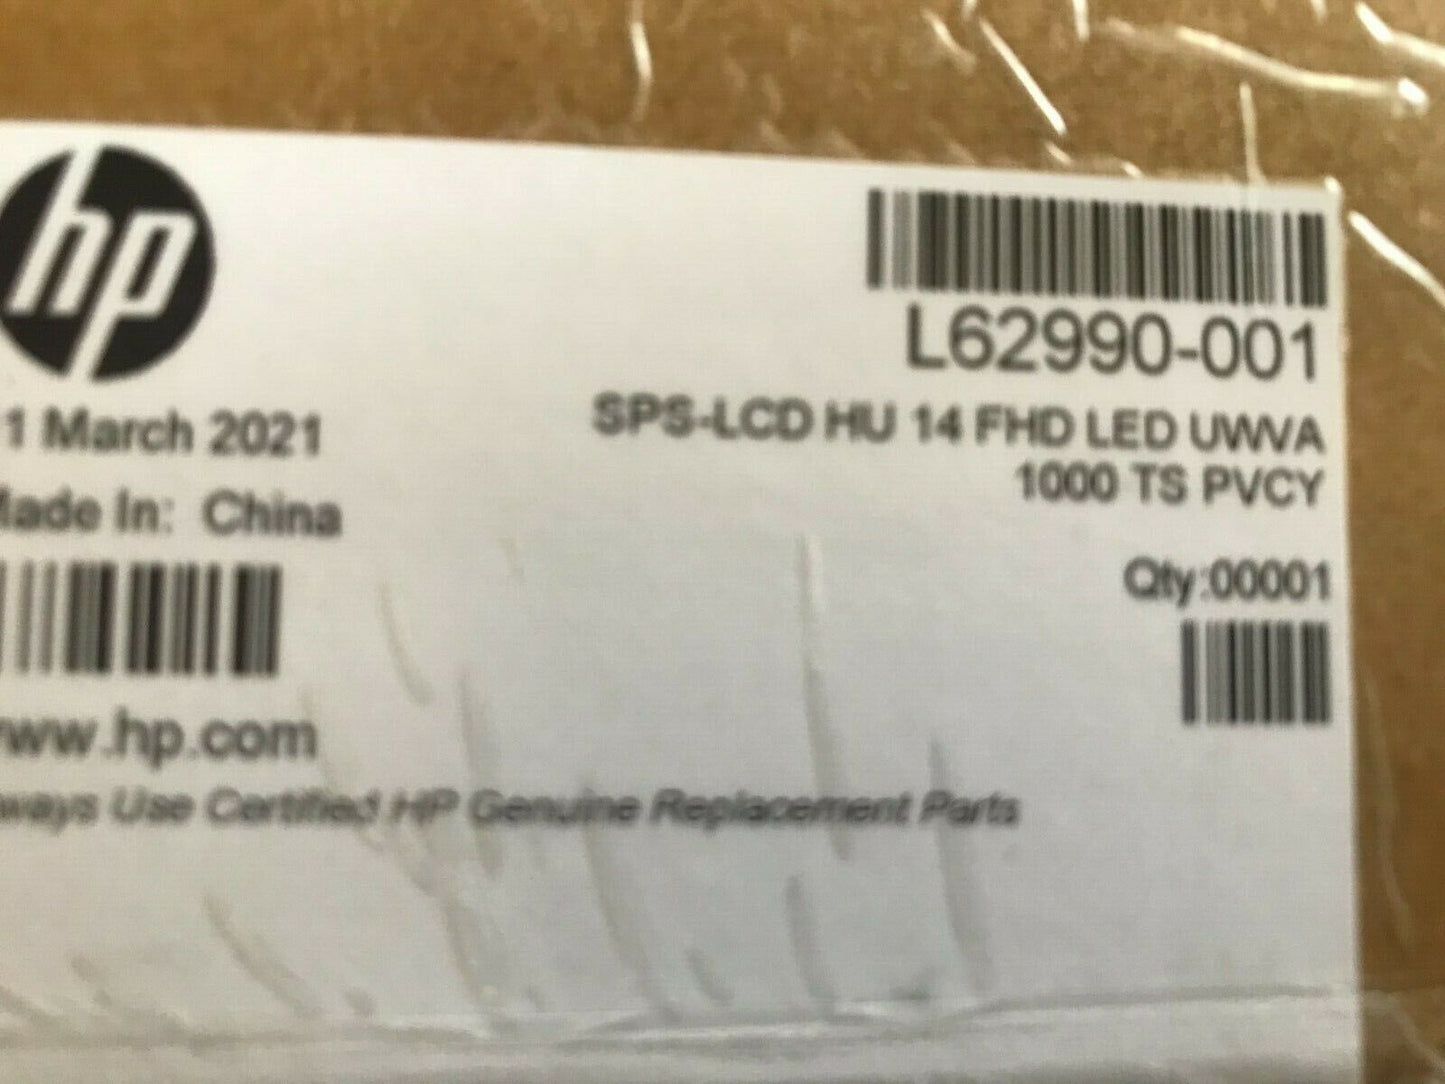 NEW HP L62990-001 LCD HU 14 FHD LED UWVA 1000 TS PVCY ELITEBOOK X360 1040 G6